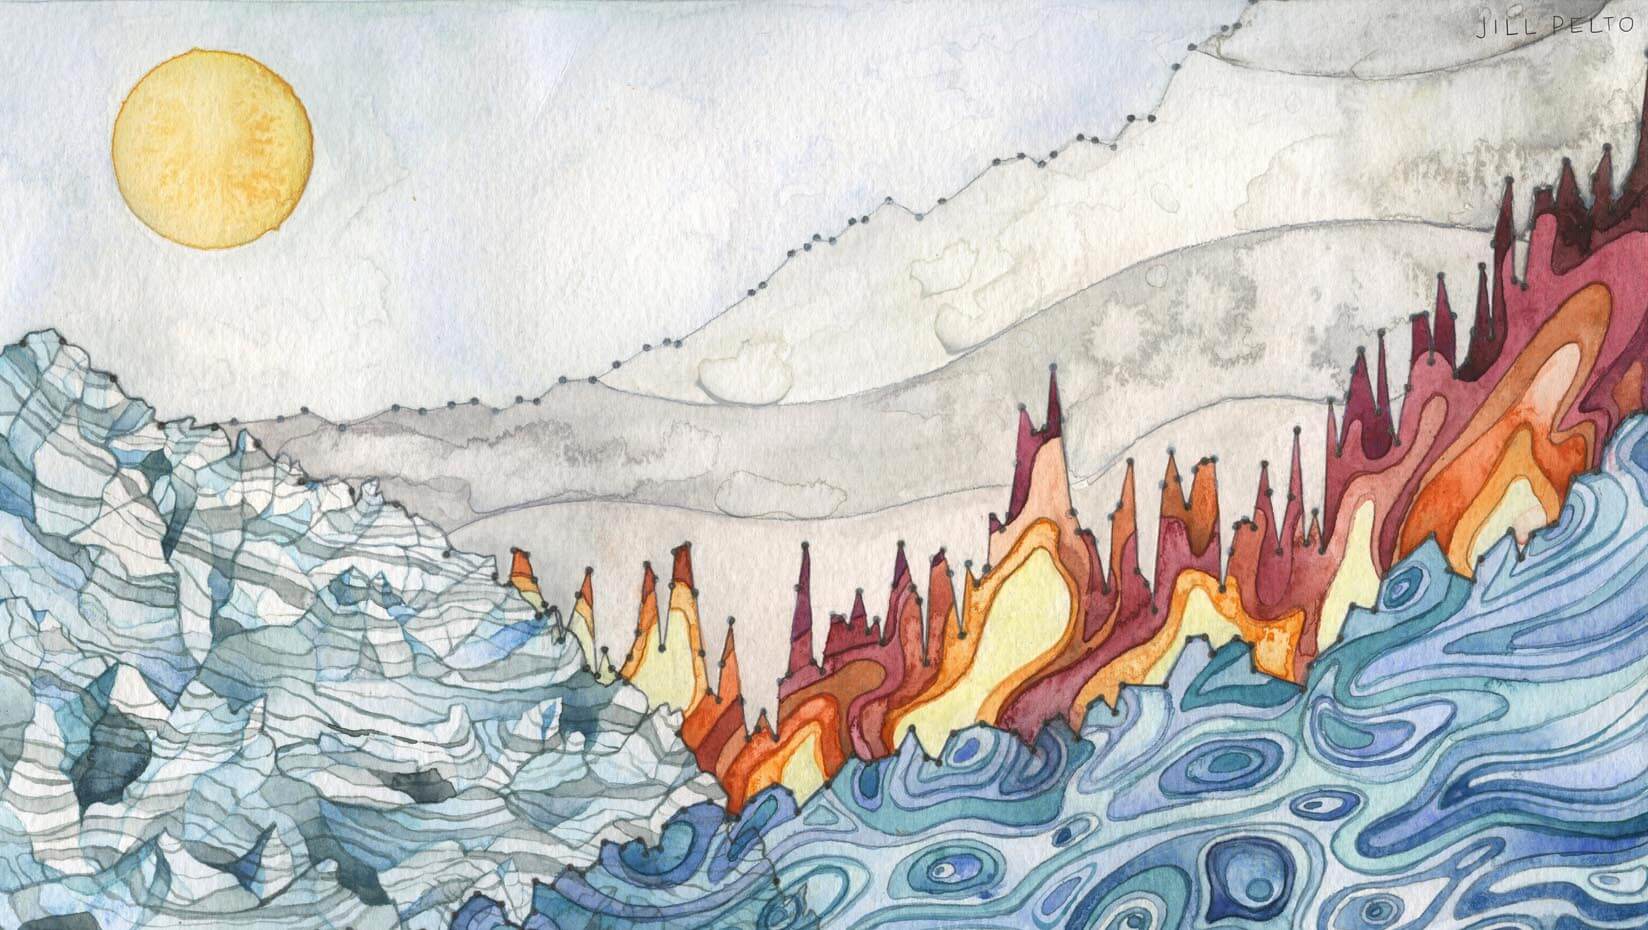 Landscape of change watercolor artwork by Jill Pelto